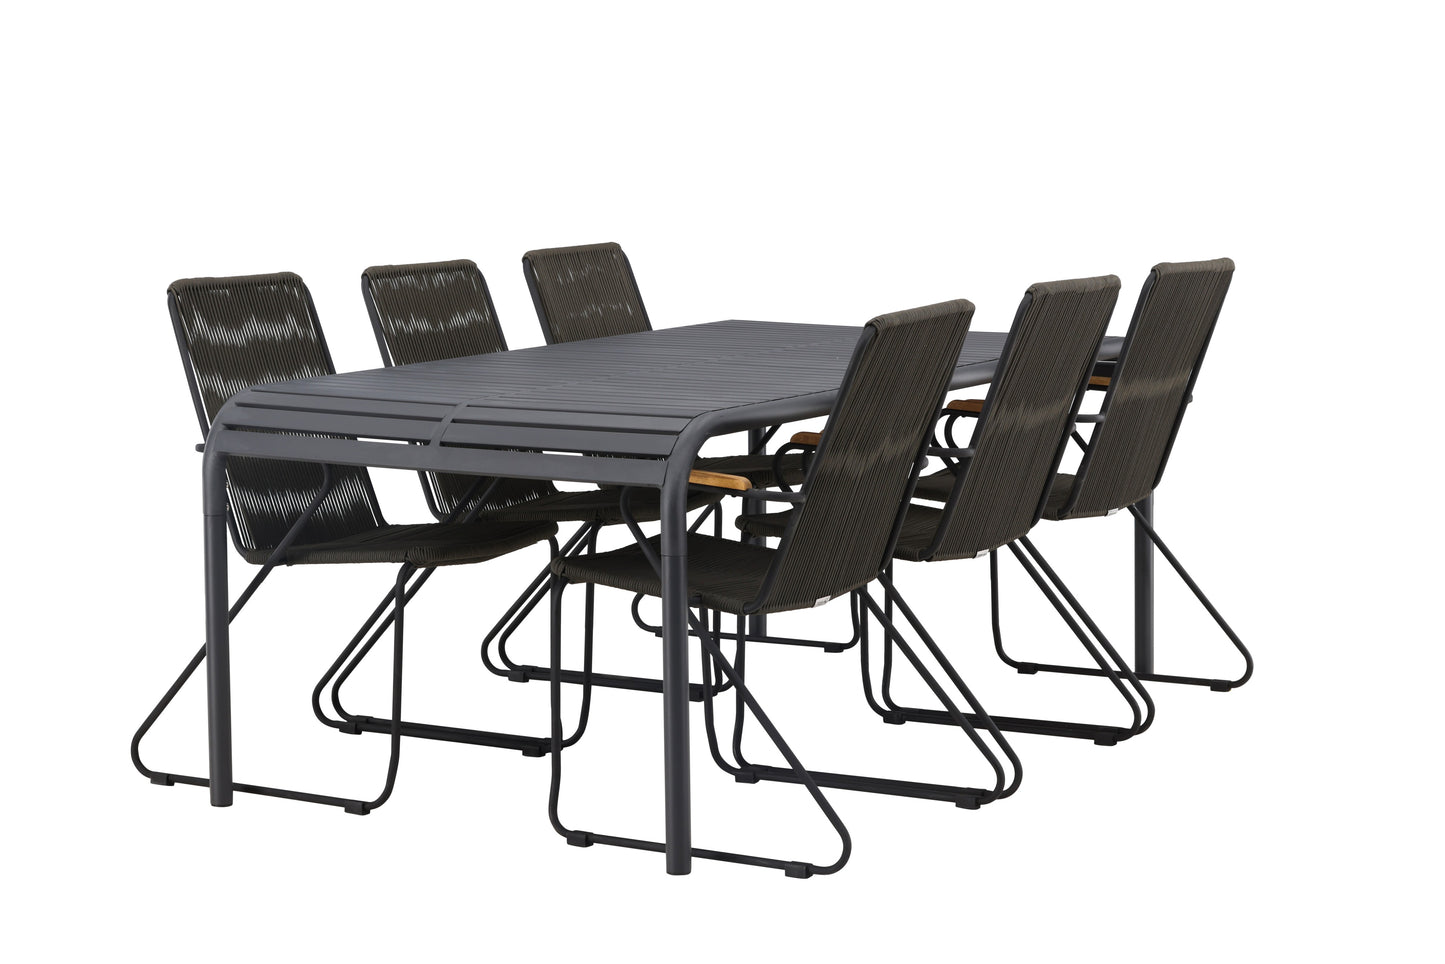 Borneo - Spisebord, Aluminium - Sort / Rektangulær 100*200* + Bois stol Stål - Sort / Mørkegrå Reb